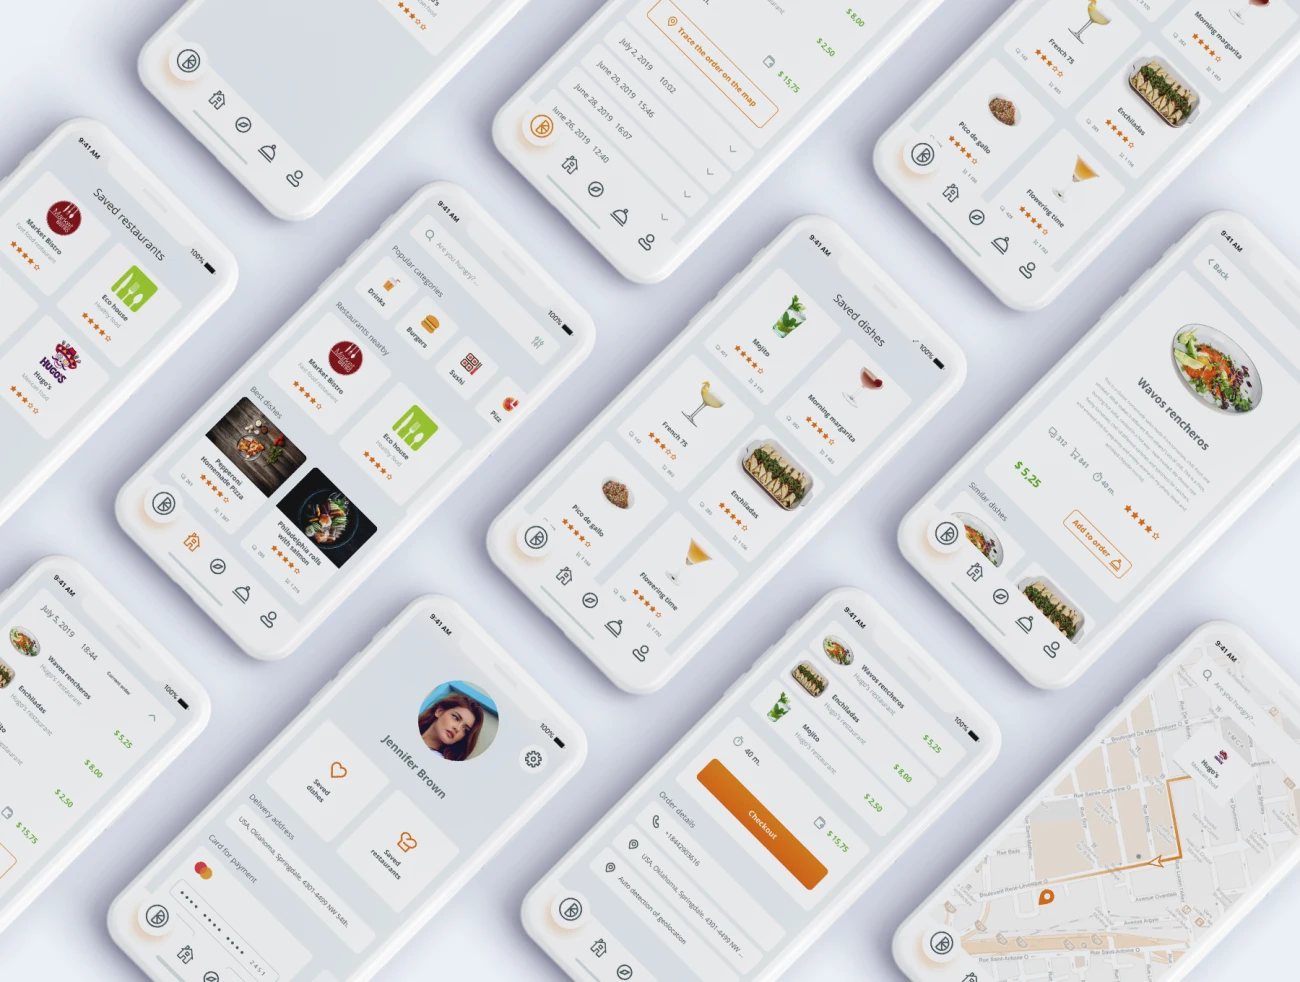 Food Delivery App IOS design UI Kit Mockup unique icons 食品配送app应用IOS设计UI套件模型独特图标-UI/UX-到位啦UI